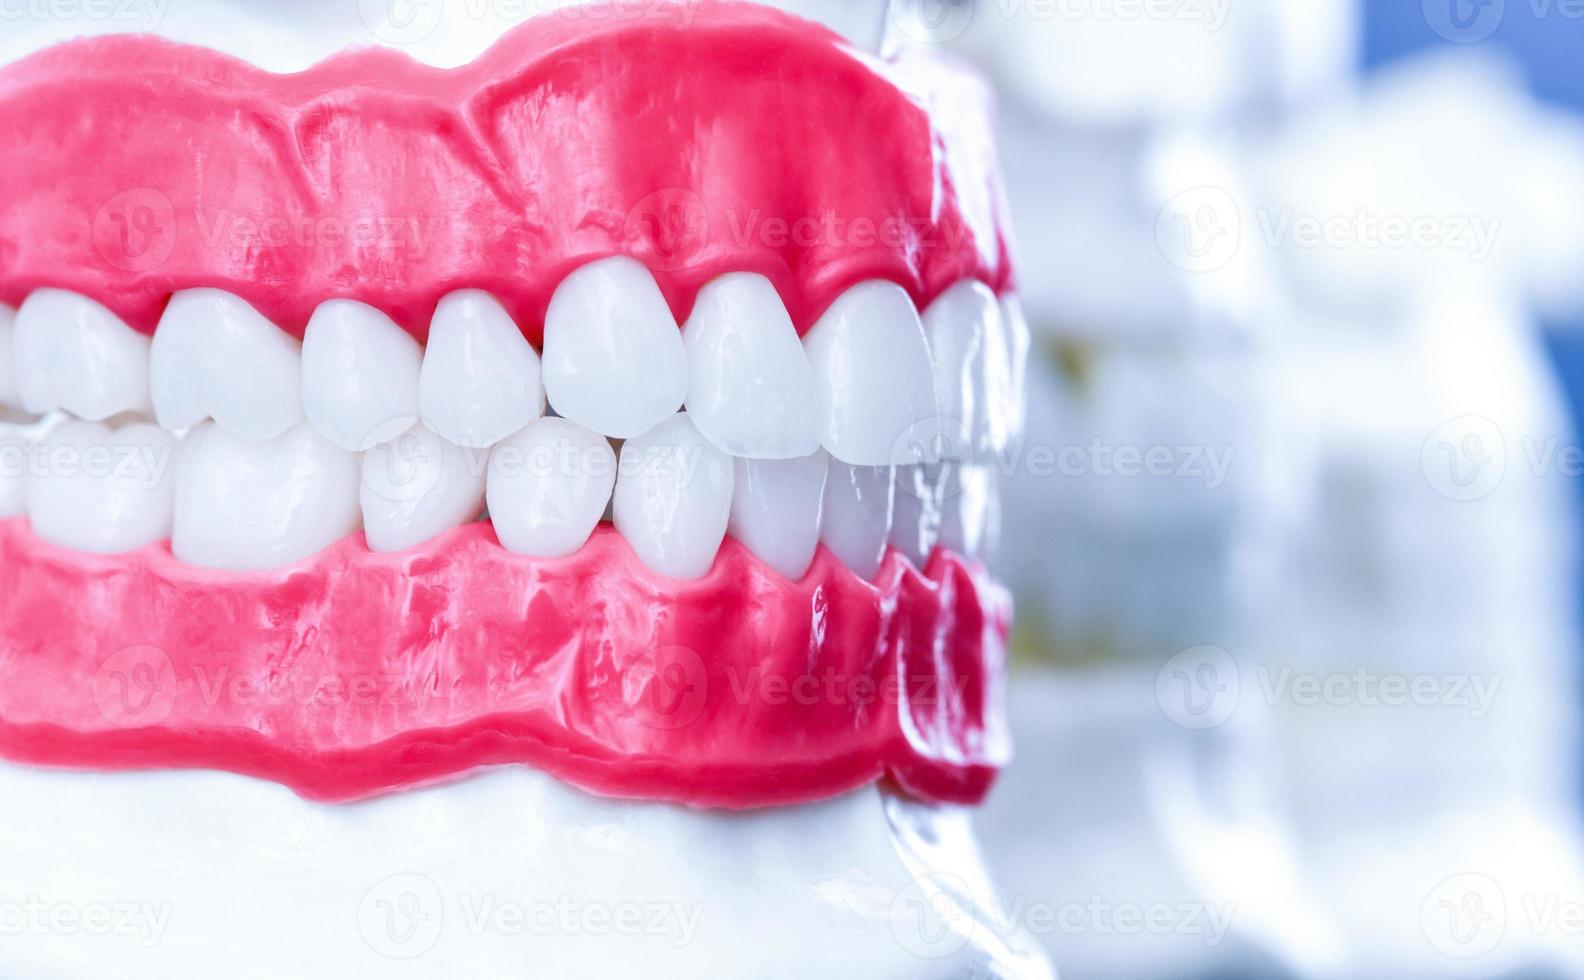 menselijk kaken met tanden en tandvlees anatomie modellen foto